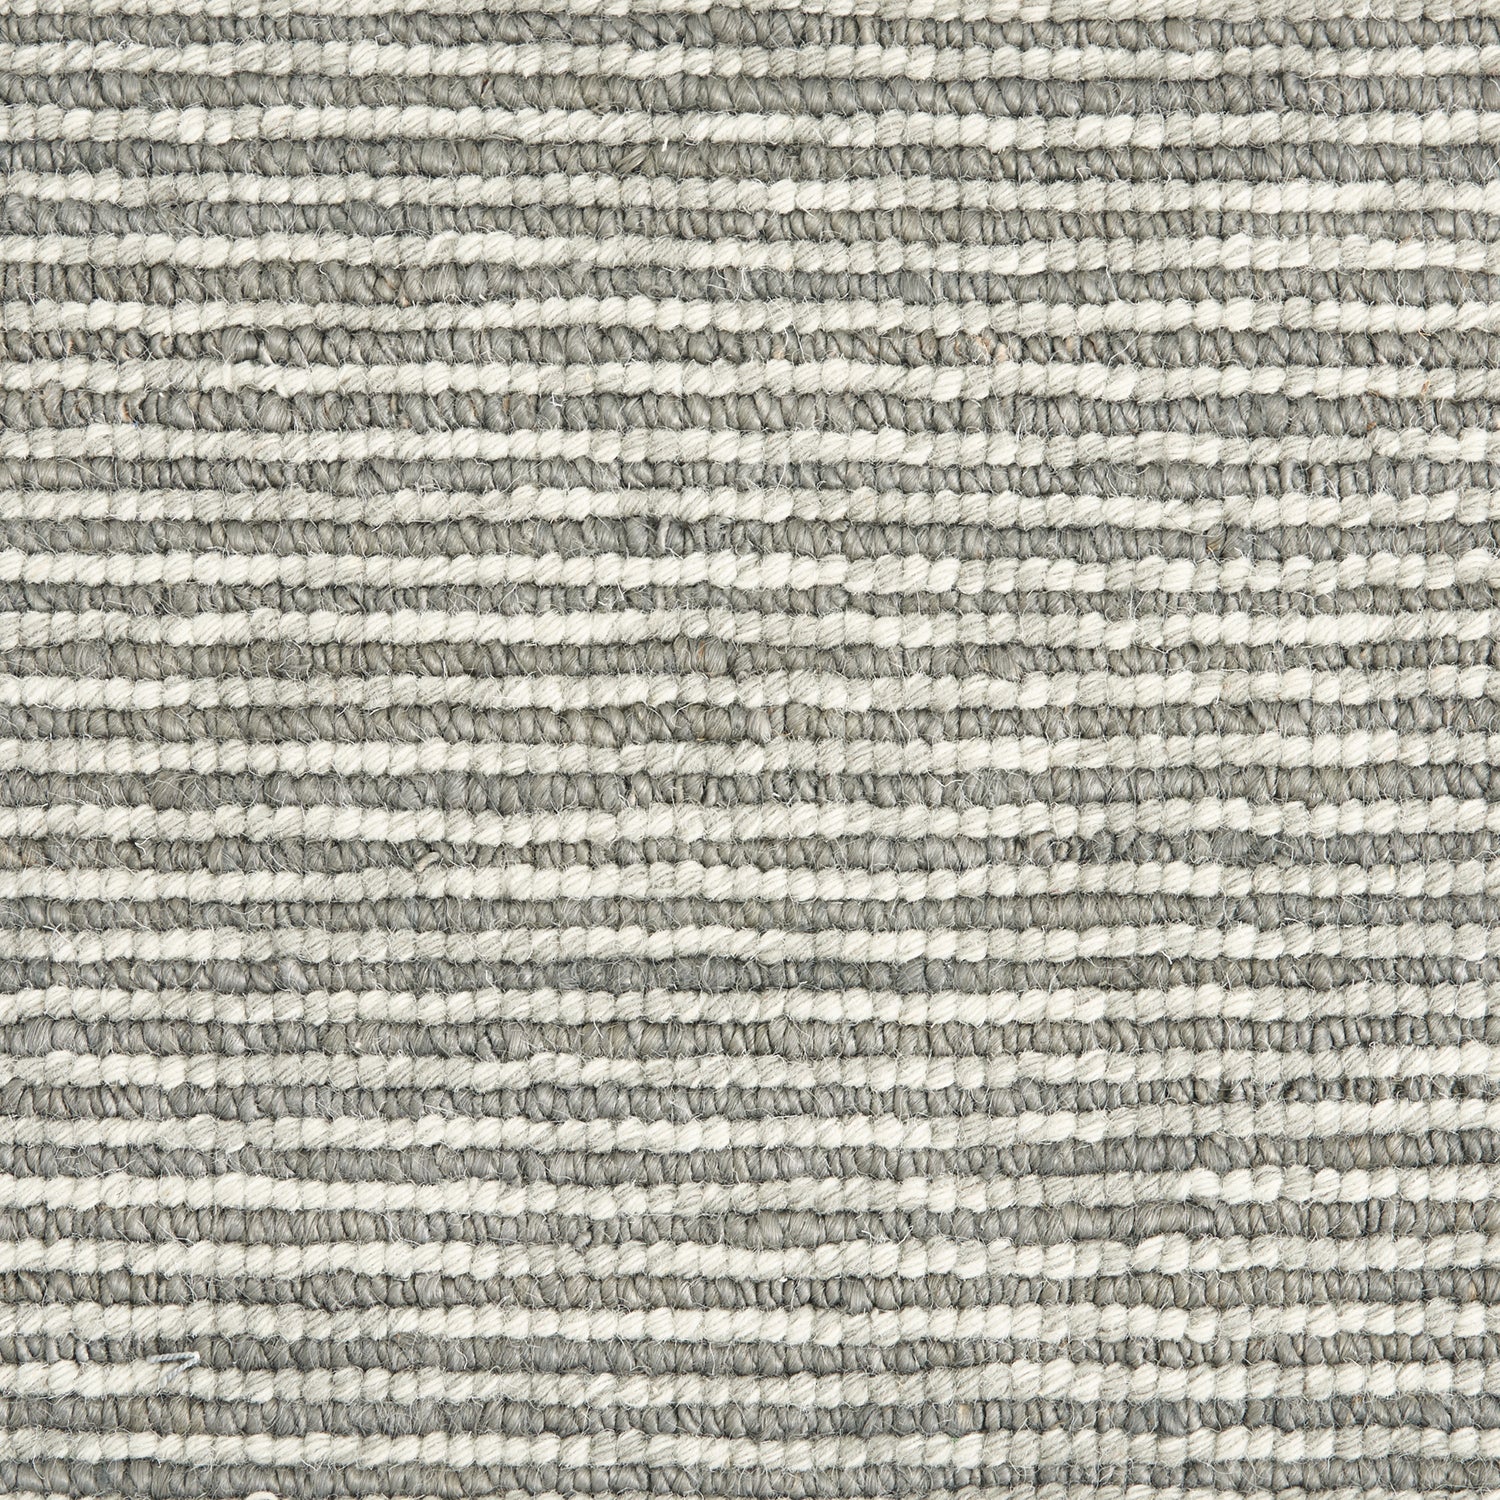 Wool broadloom carpet swatch in a striped steel and cream weave pattern.